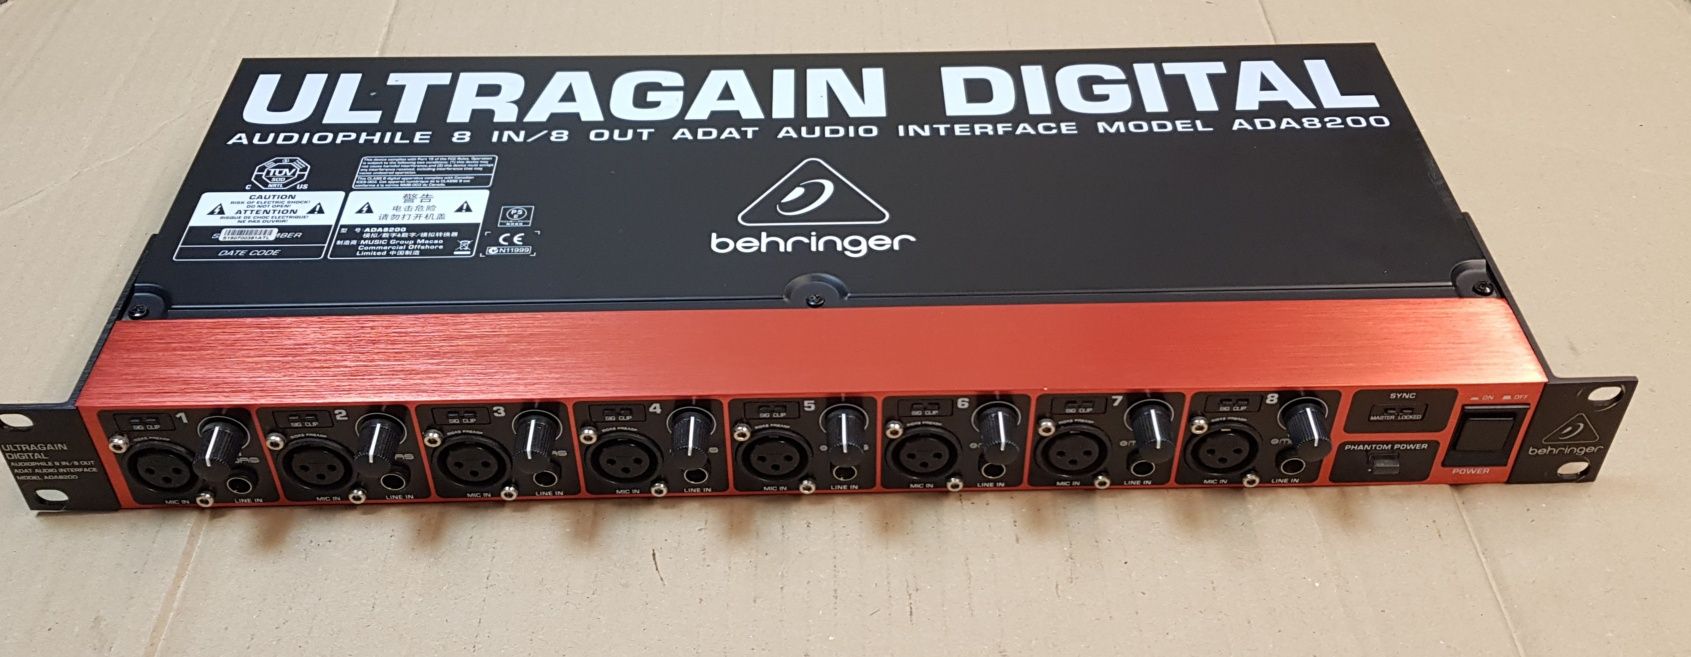 Behringer ADA8200 ULTRAGAIN DIGITAL 8-kanałowy A/D i D/A